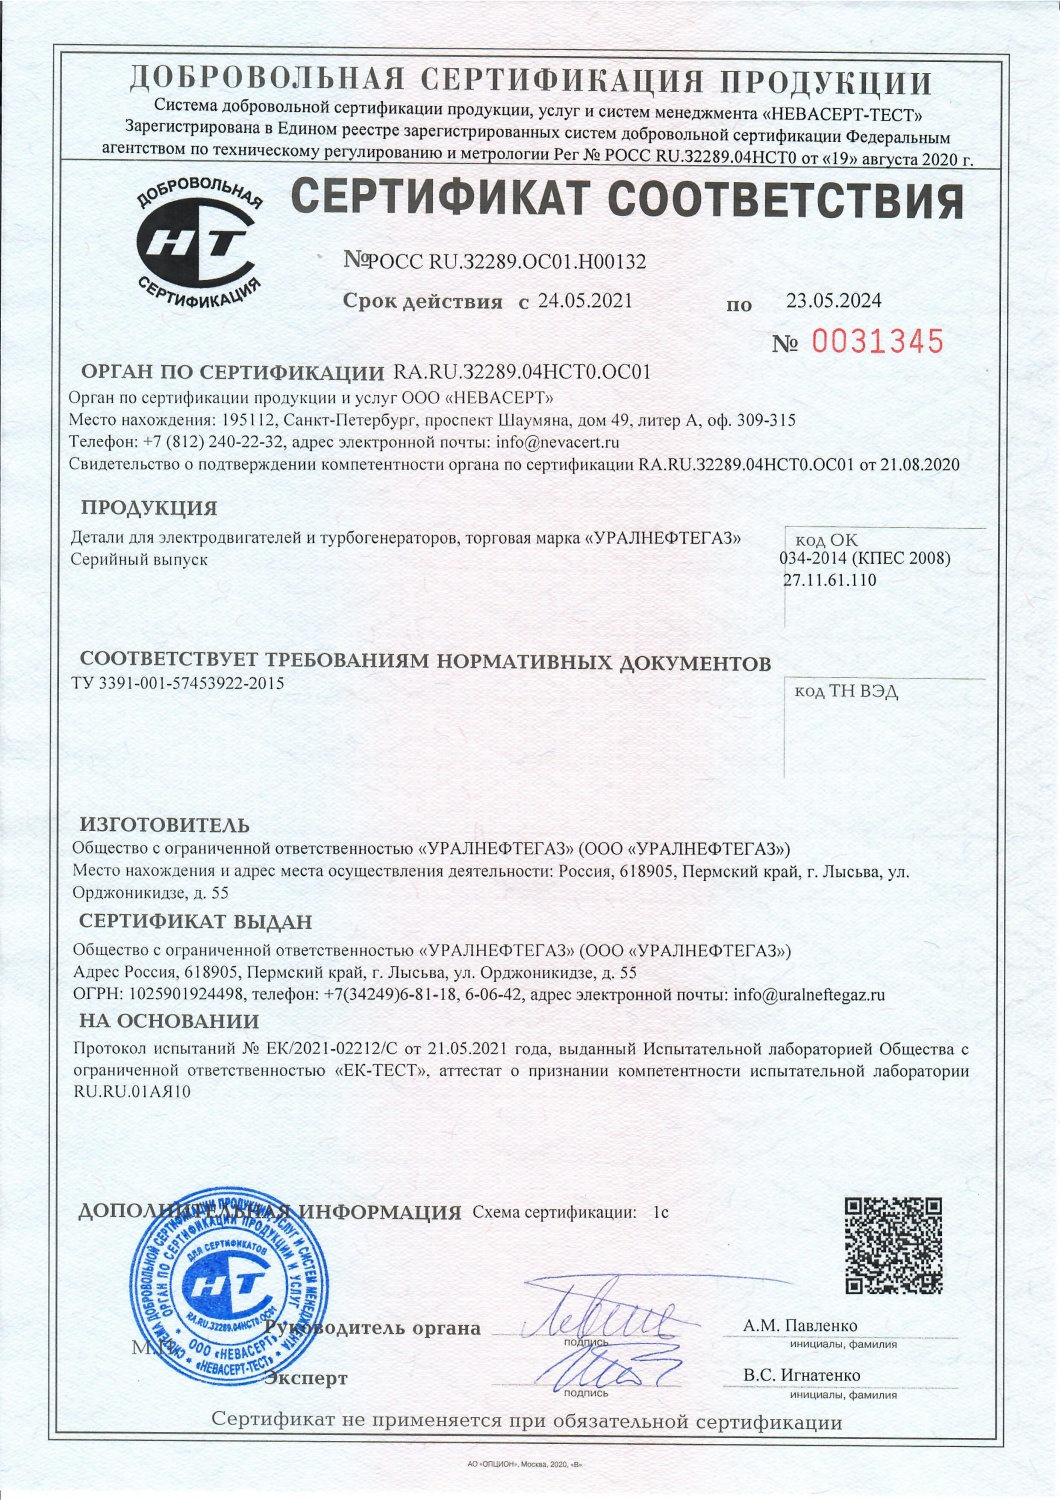 Сертификат соответствия требованиям